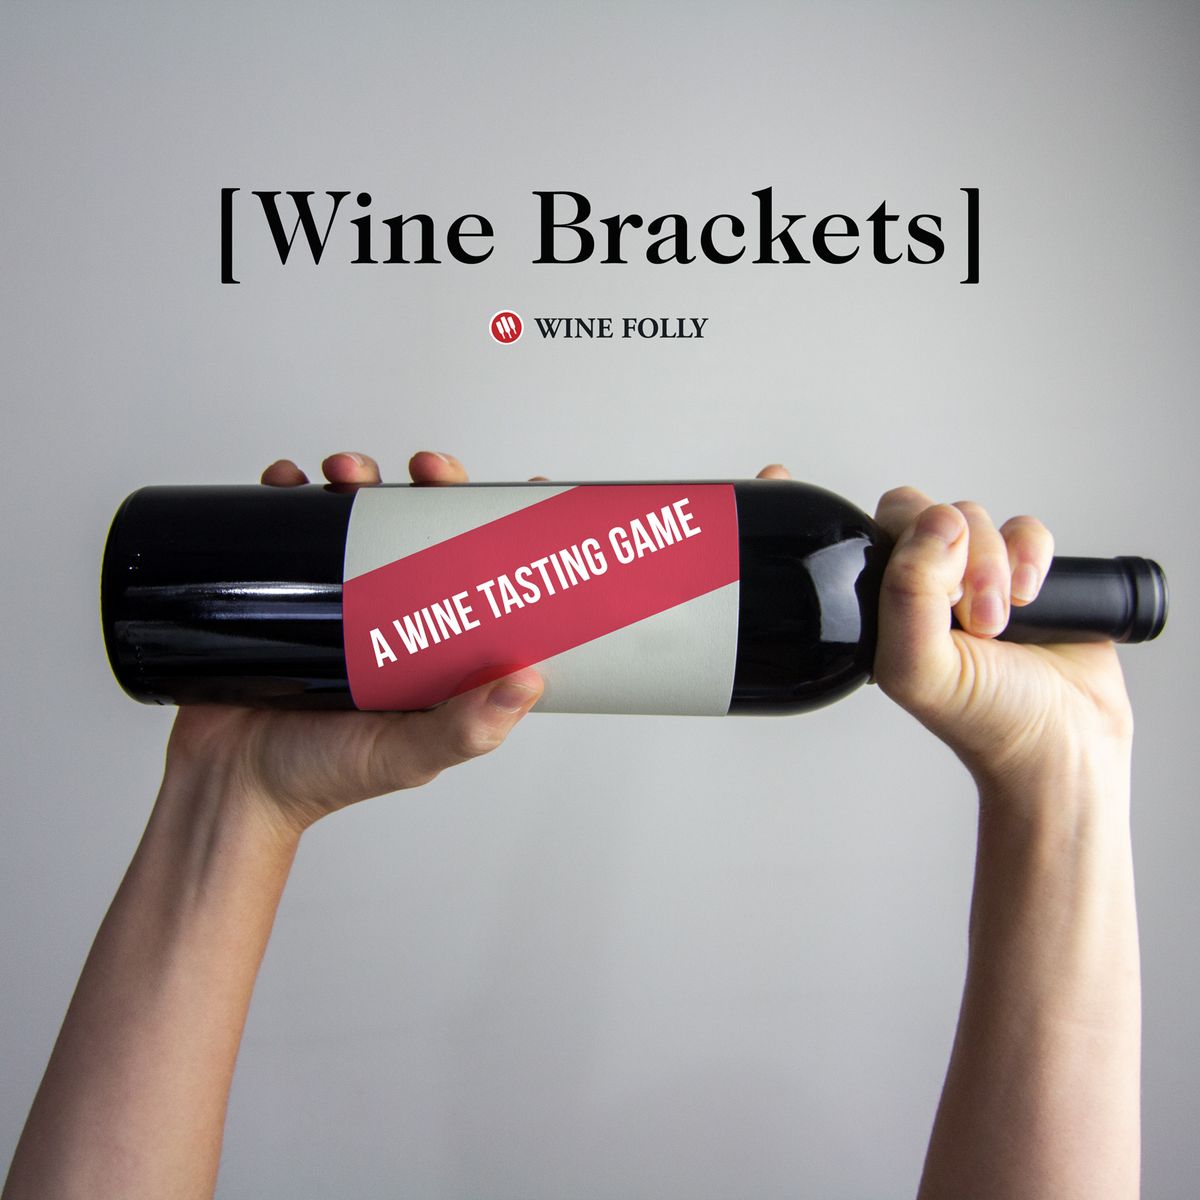 Wine Brackets: дружеская соревновательная игра с дегустацией вин - Wine Folly